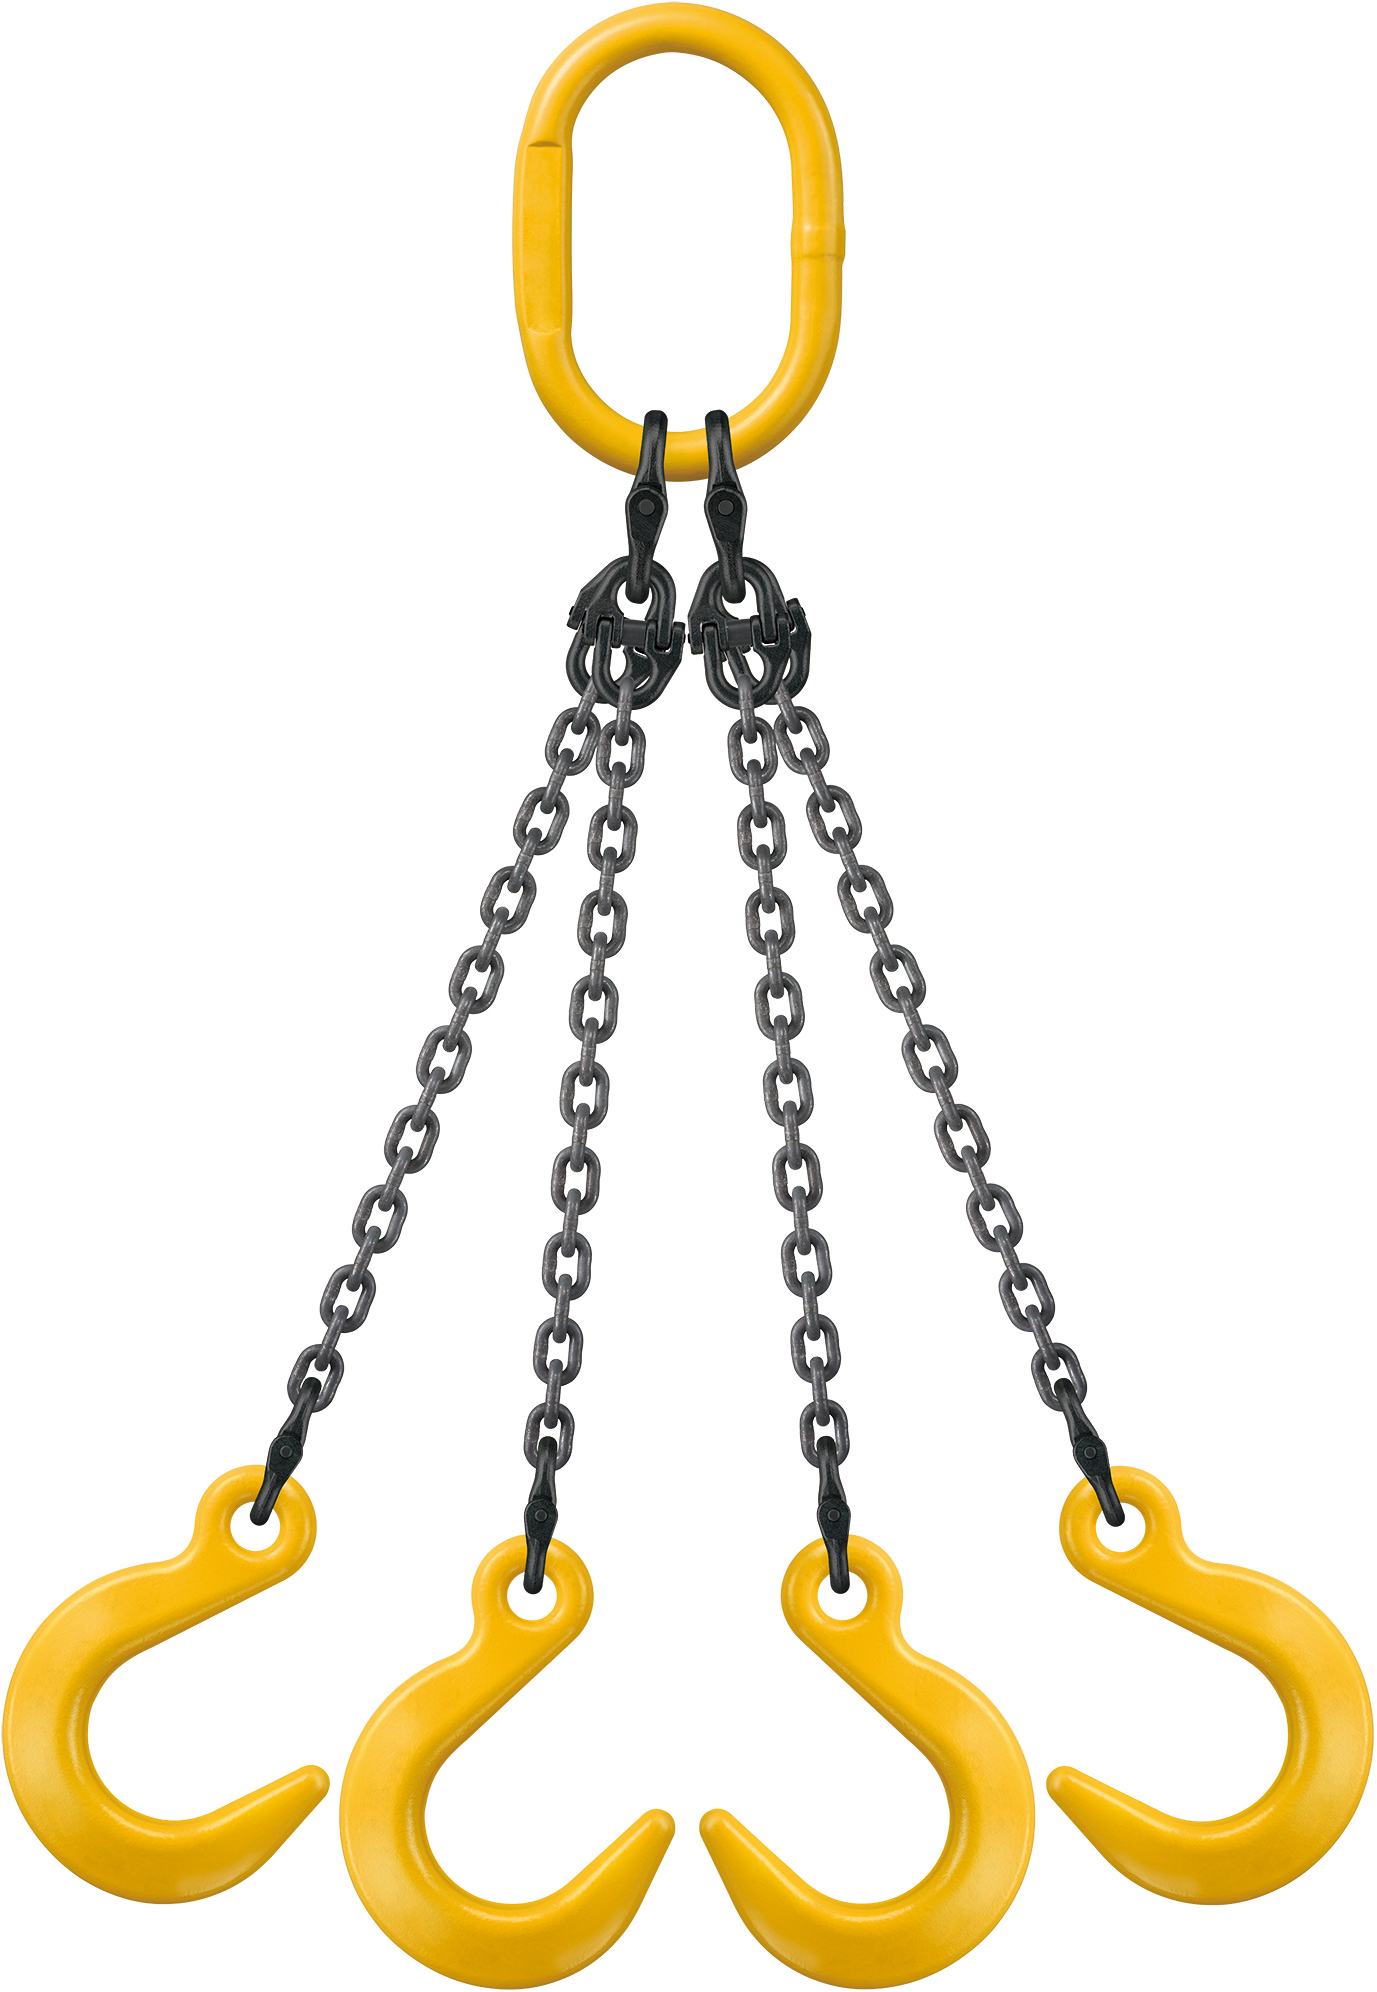 KITO-环链吊具